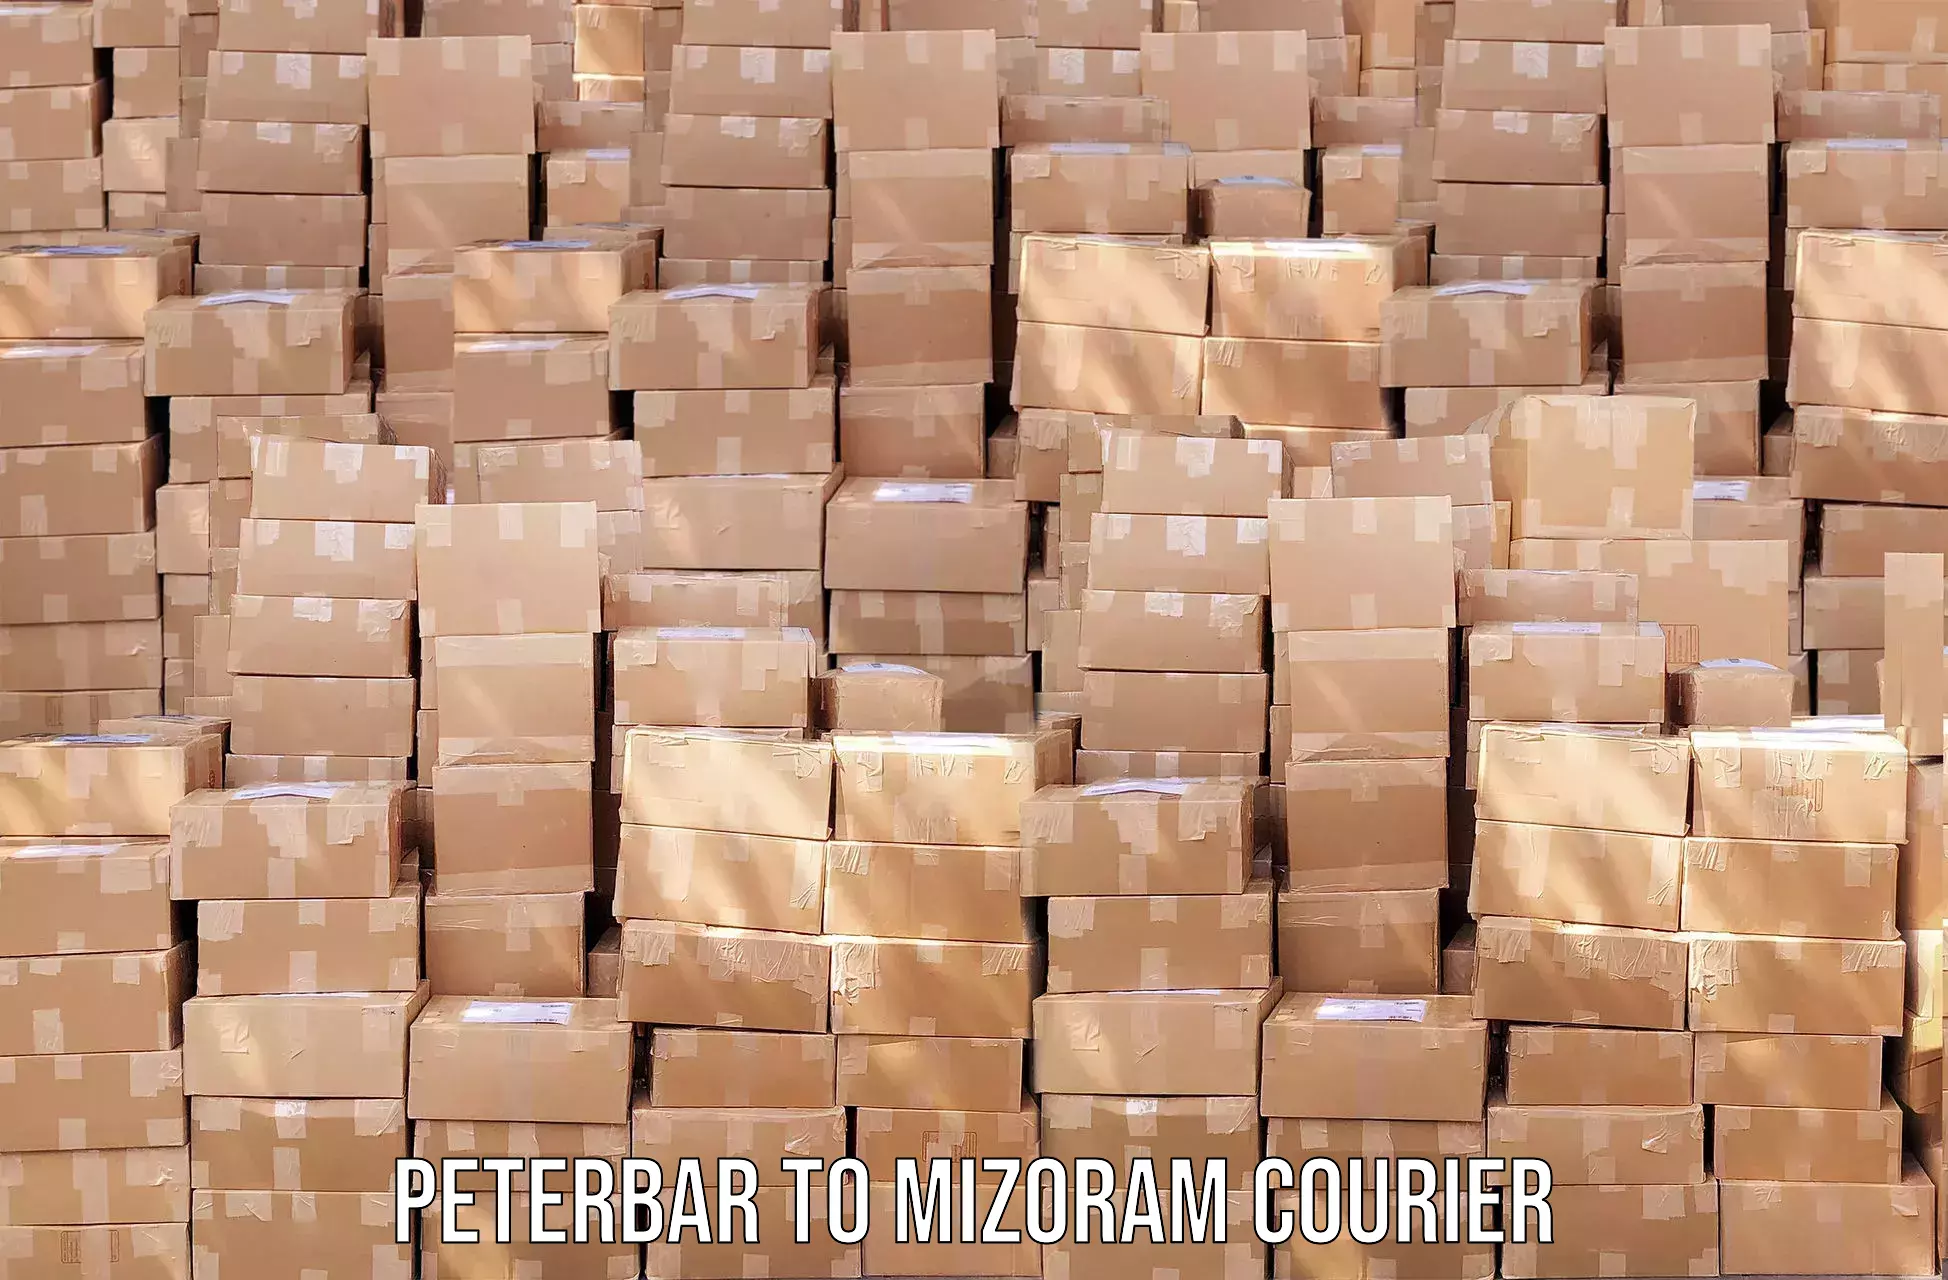 Efficient parcel service Peterbar to Saitual